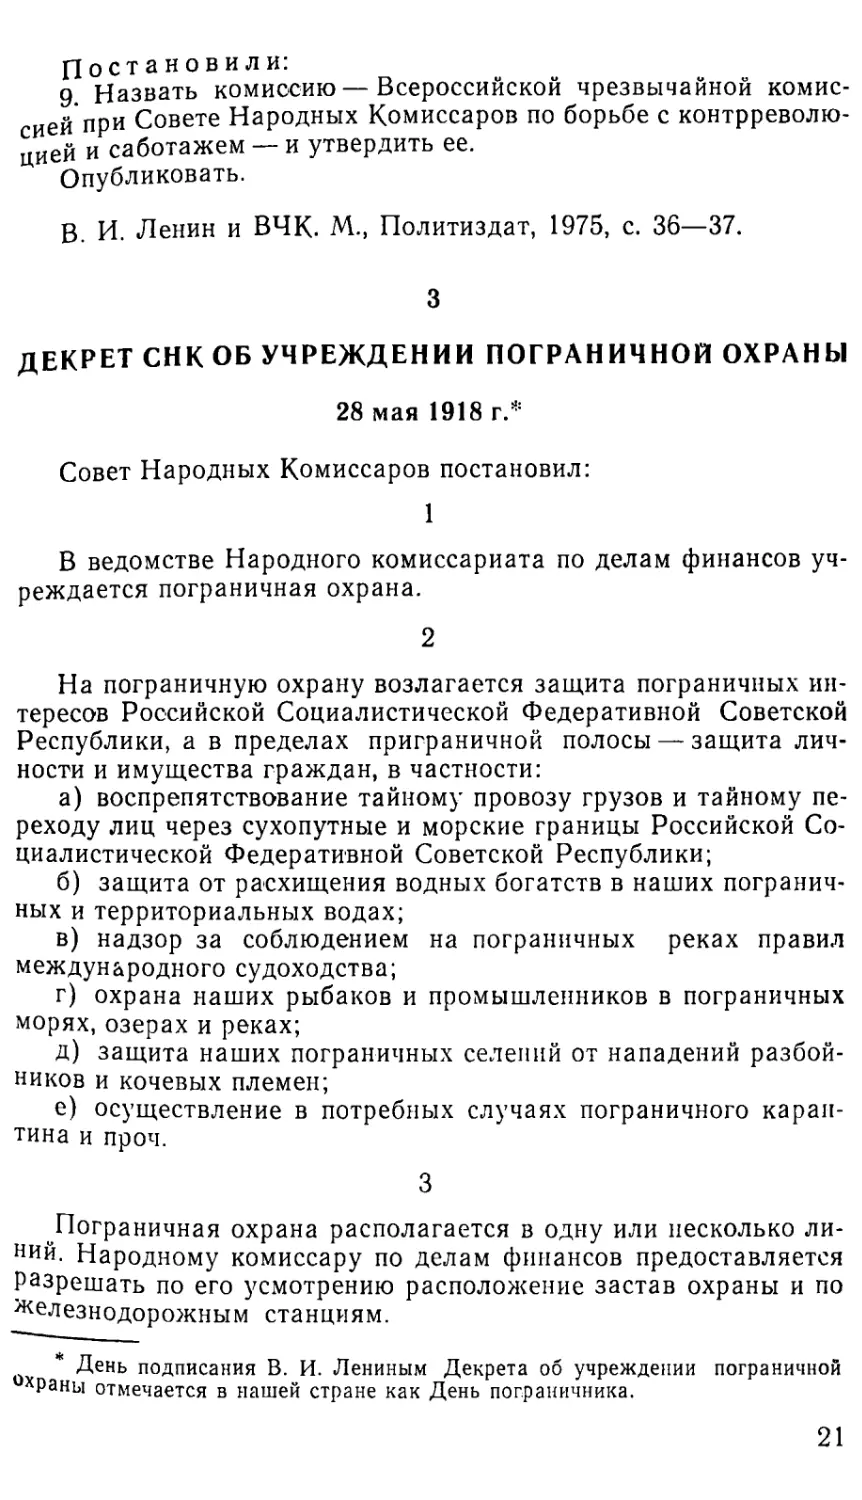 3. Декрет СНК об учреждении пограничной охраны. 28 мая 1918 г